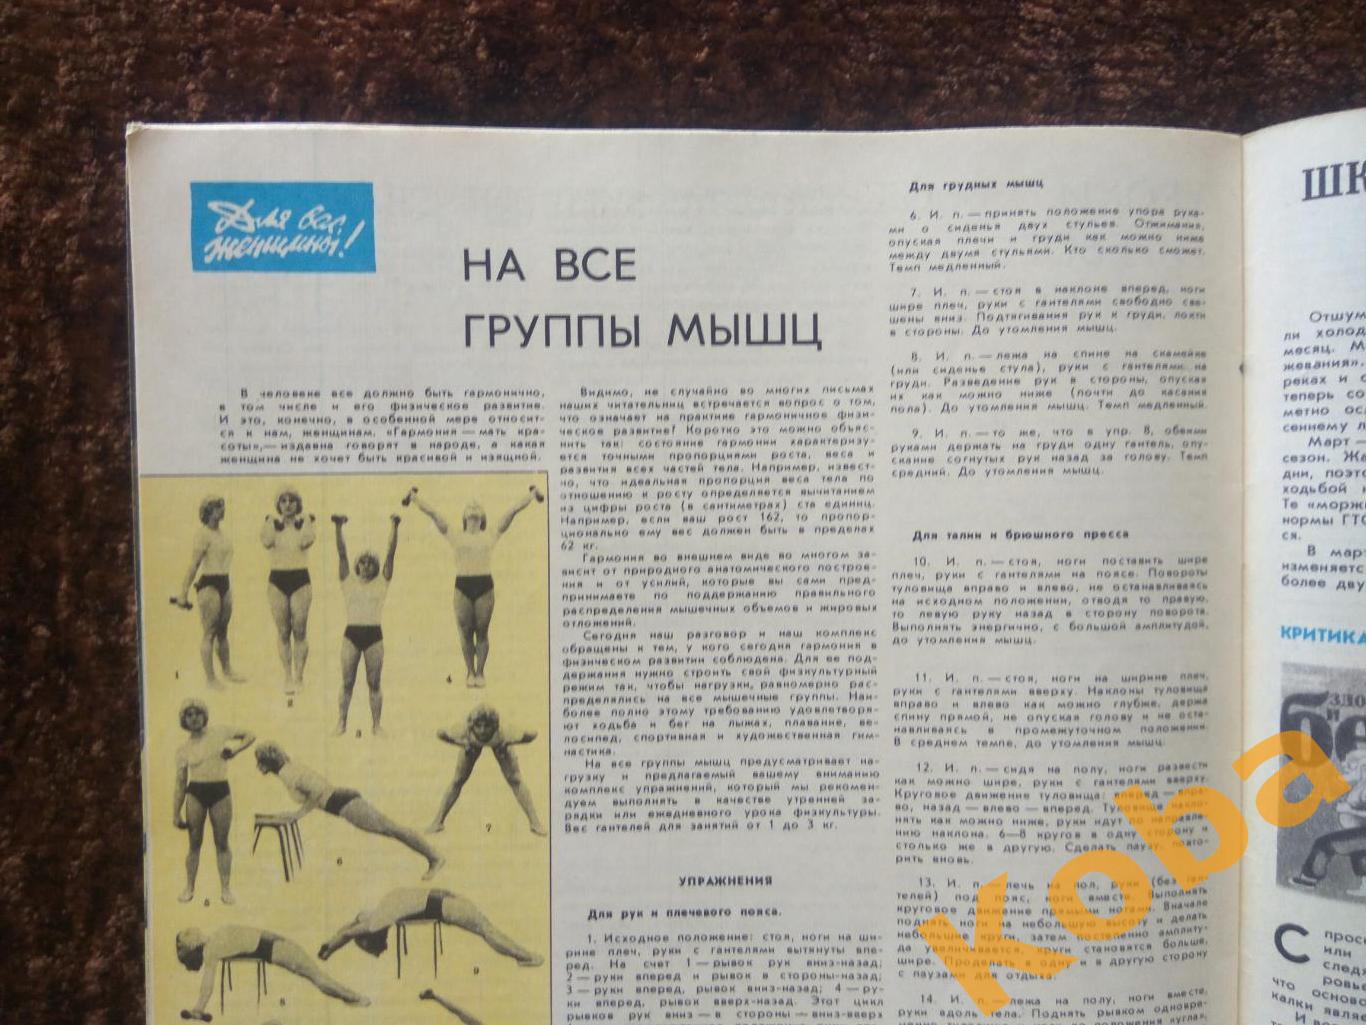 Борьба Стрельба Фигурное катание Гиревой спорт Спортивная жизнь России 1977 №2 4